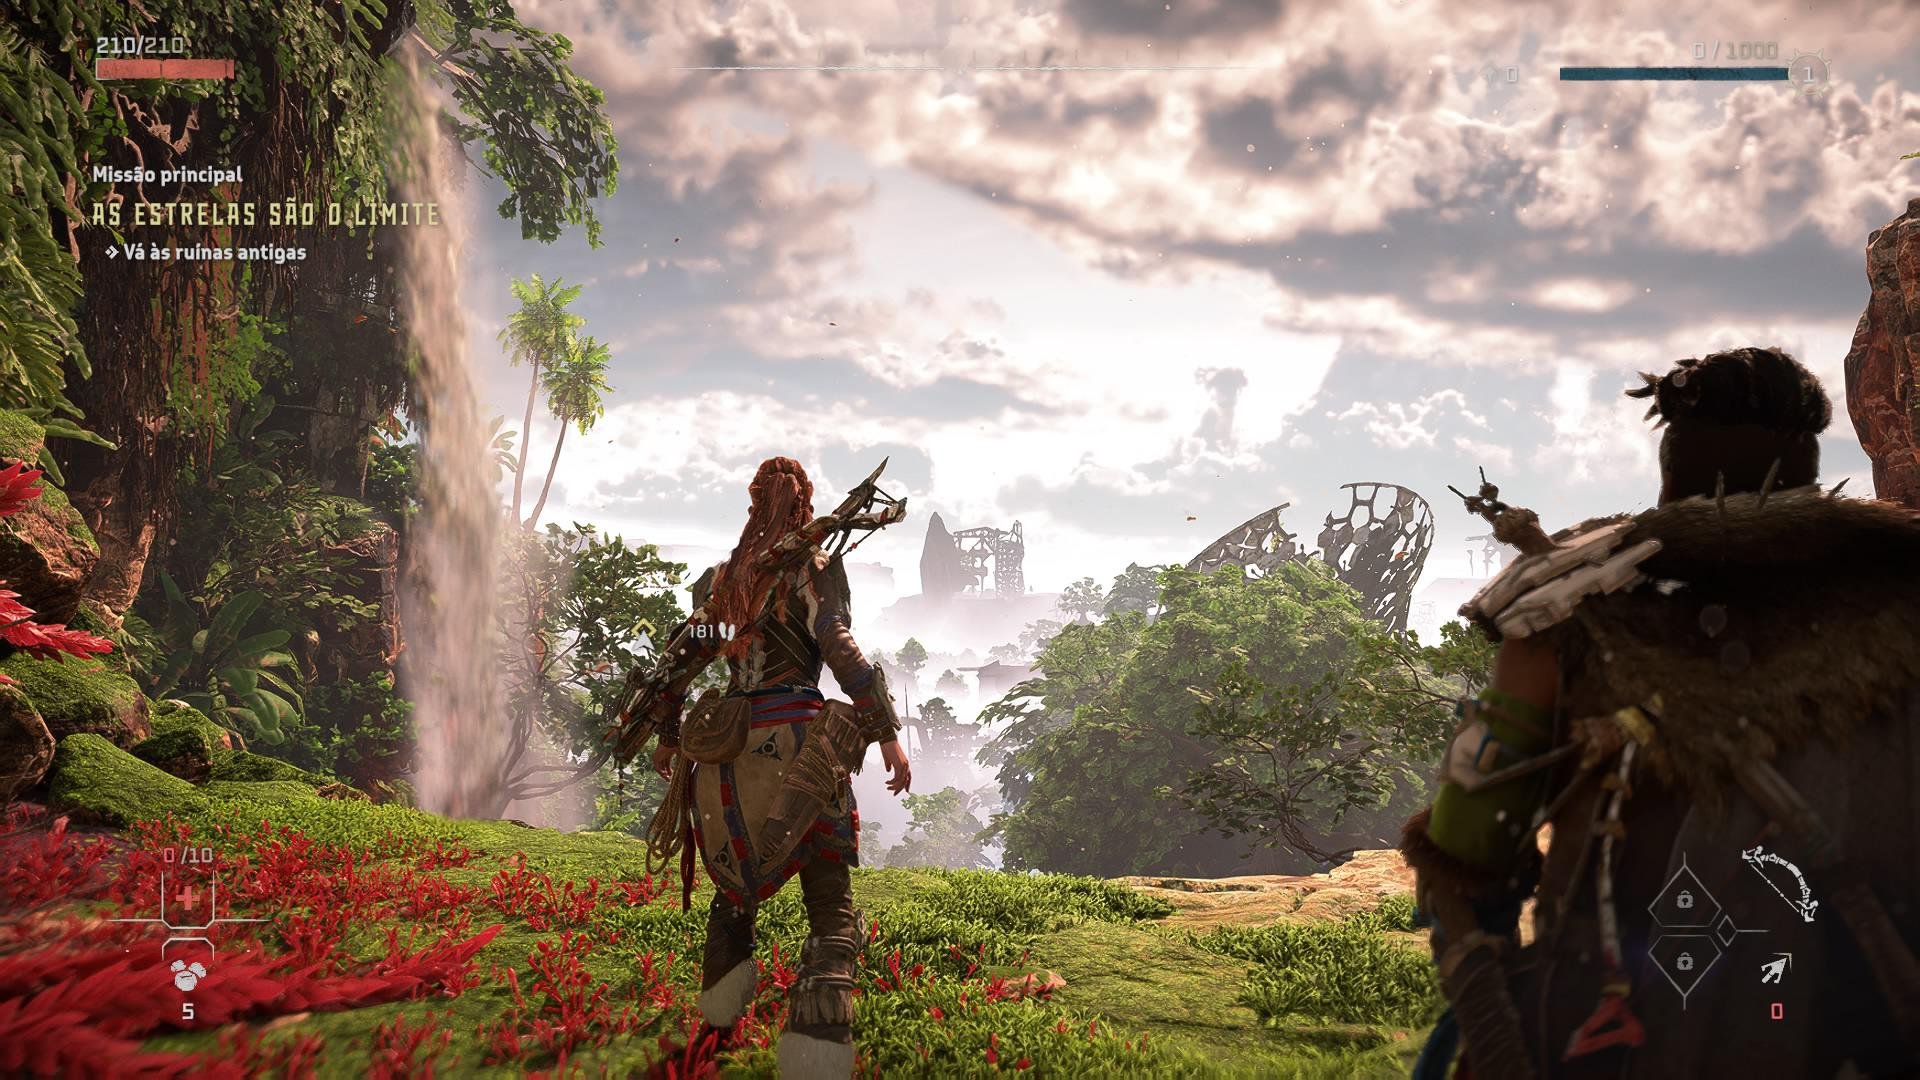 Descrição da imagem a protagonista uma mulher ruiva, de costas em frente a uma paisagem linda com flores vermelhas e arvores.